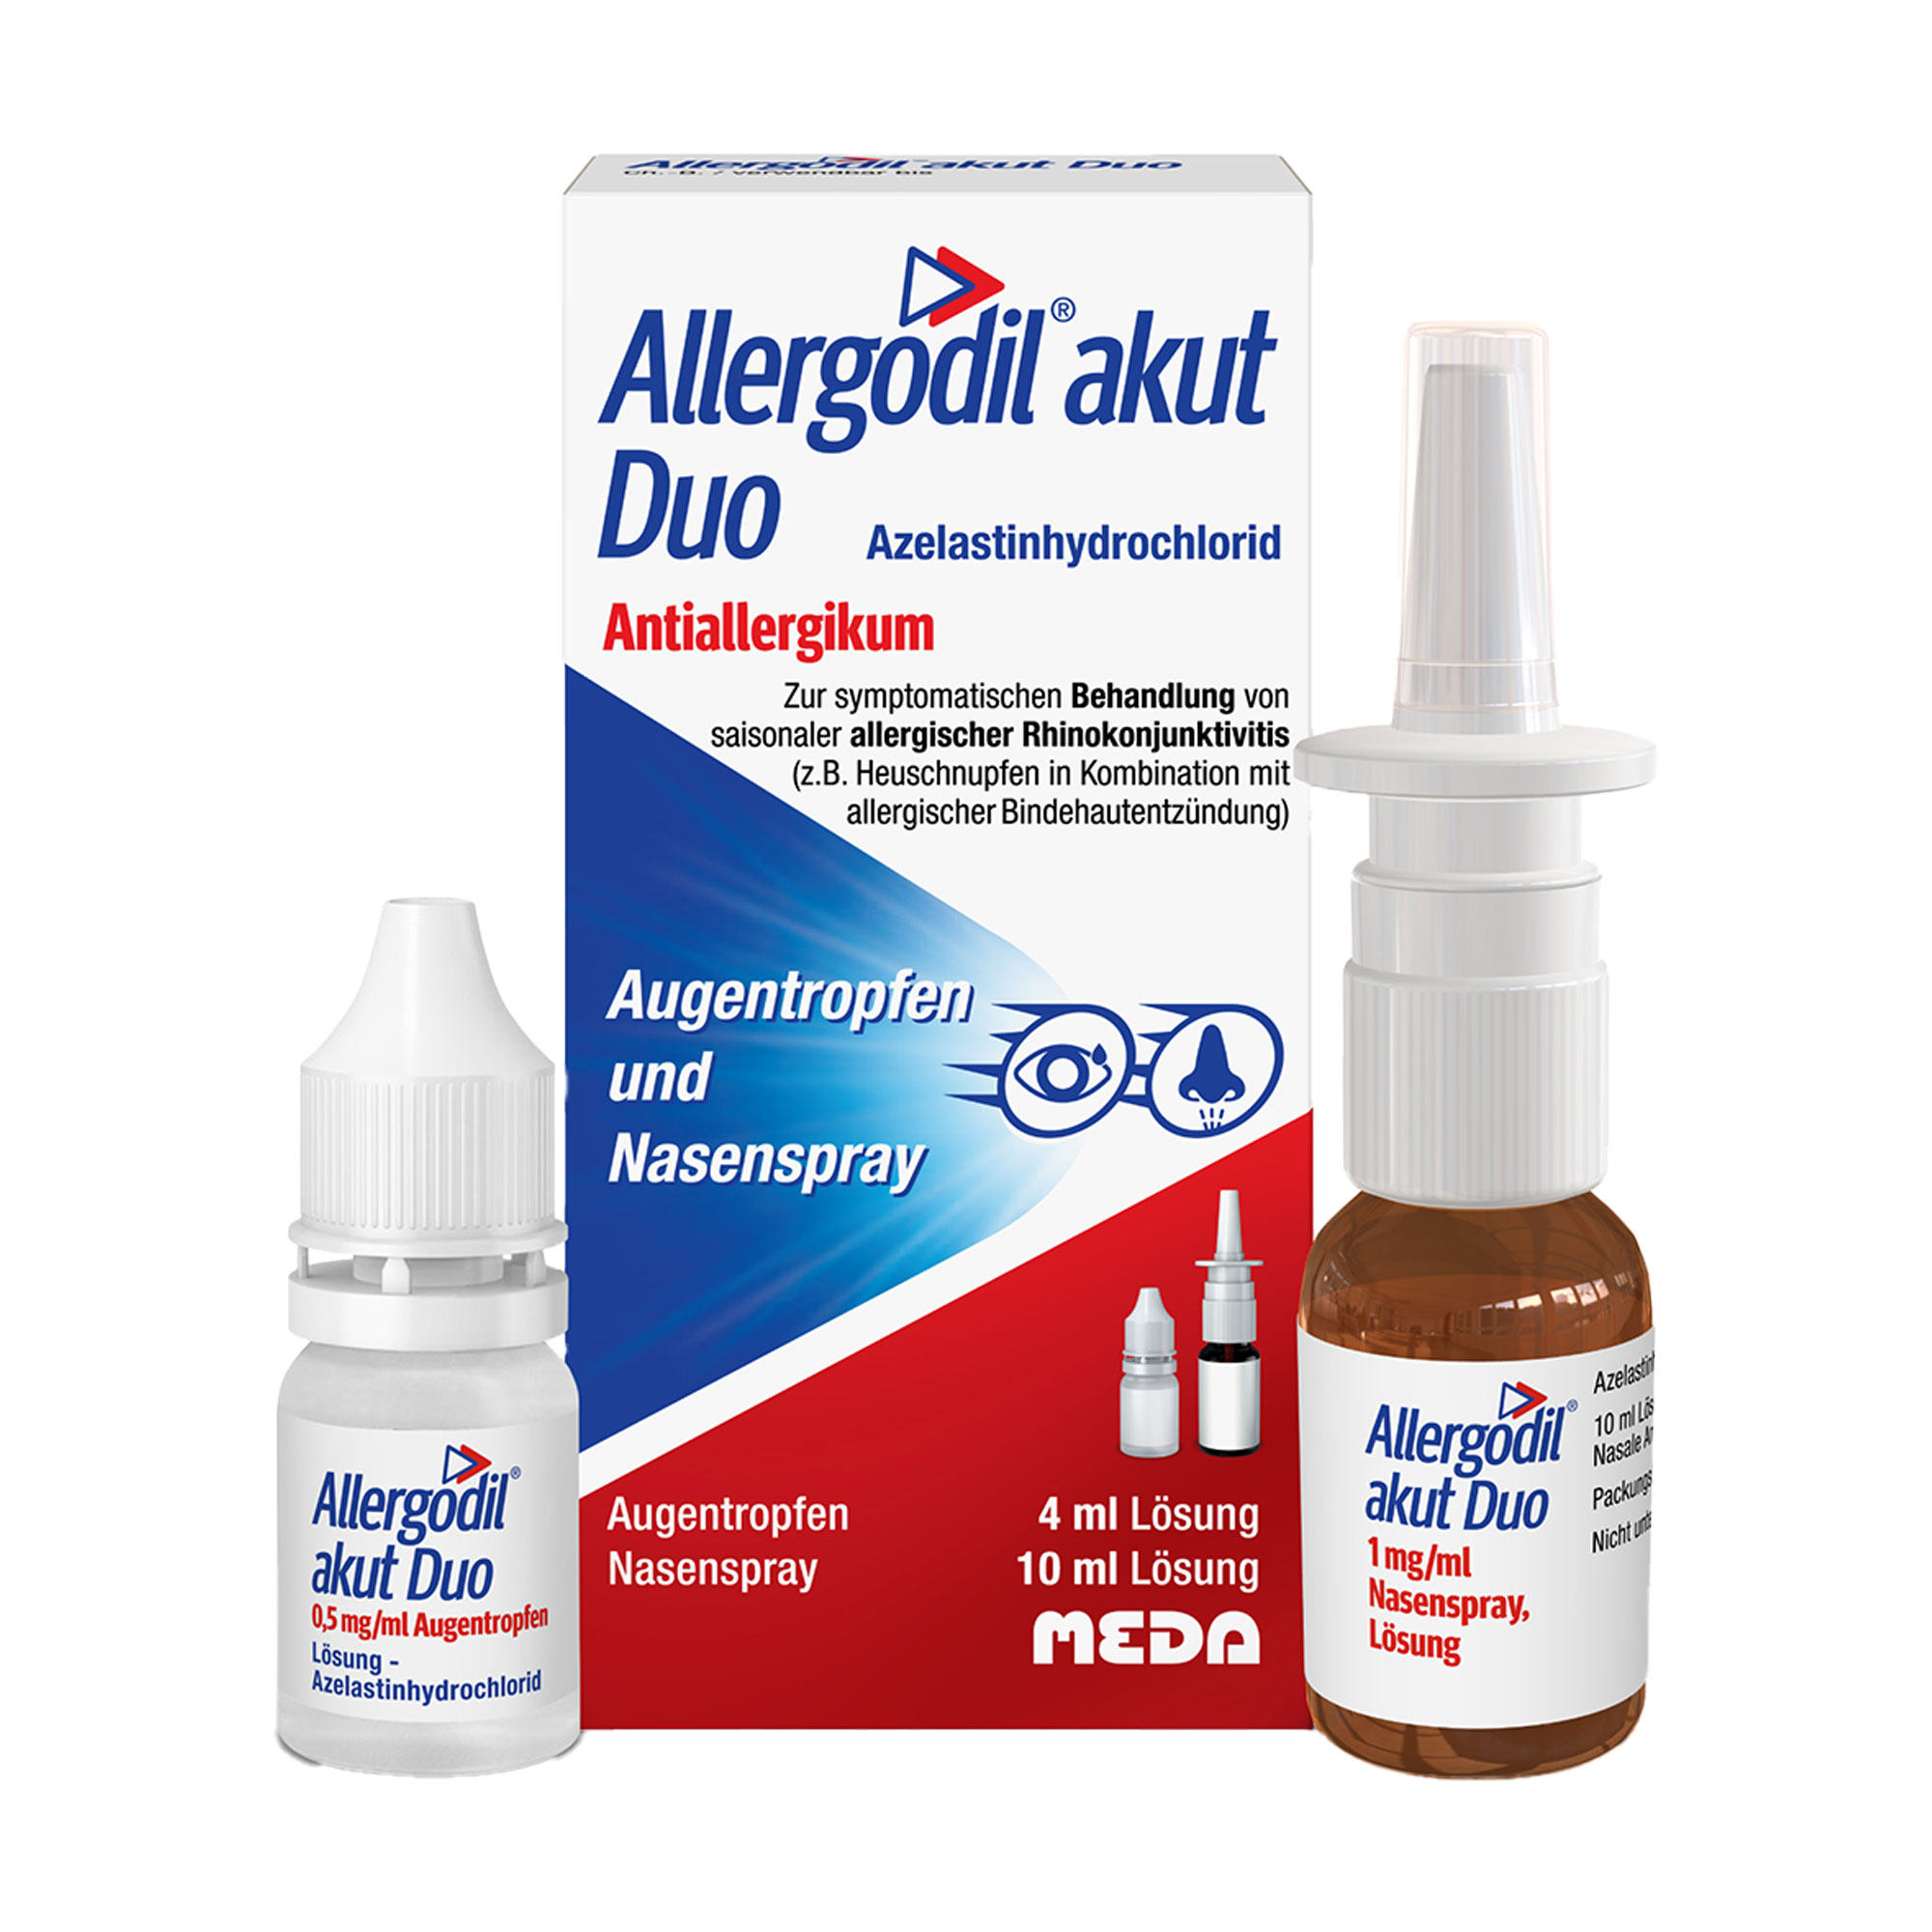 Zur symptomatischen Behandlung von saisonaler allergischer Rhinokonjunktivitis.